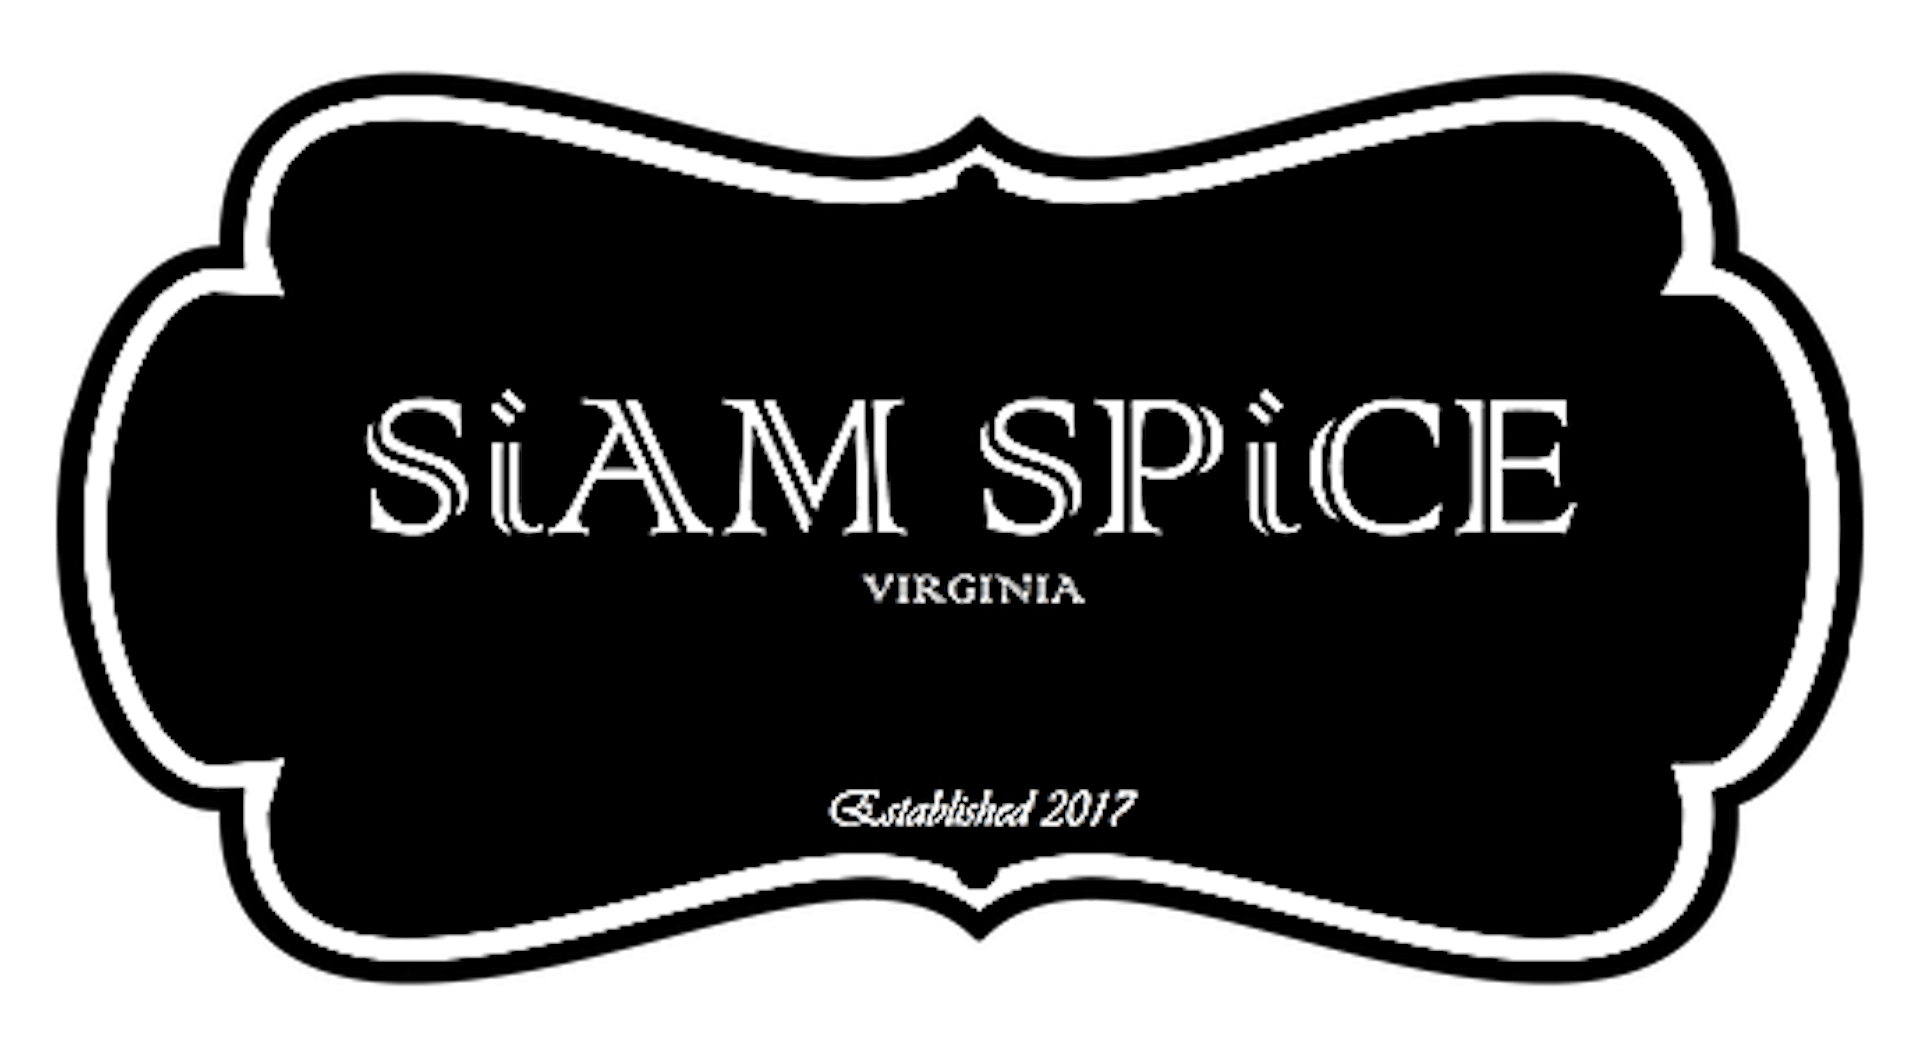 Siam Spice Thai Cuisine